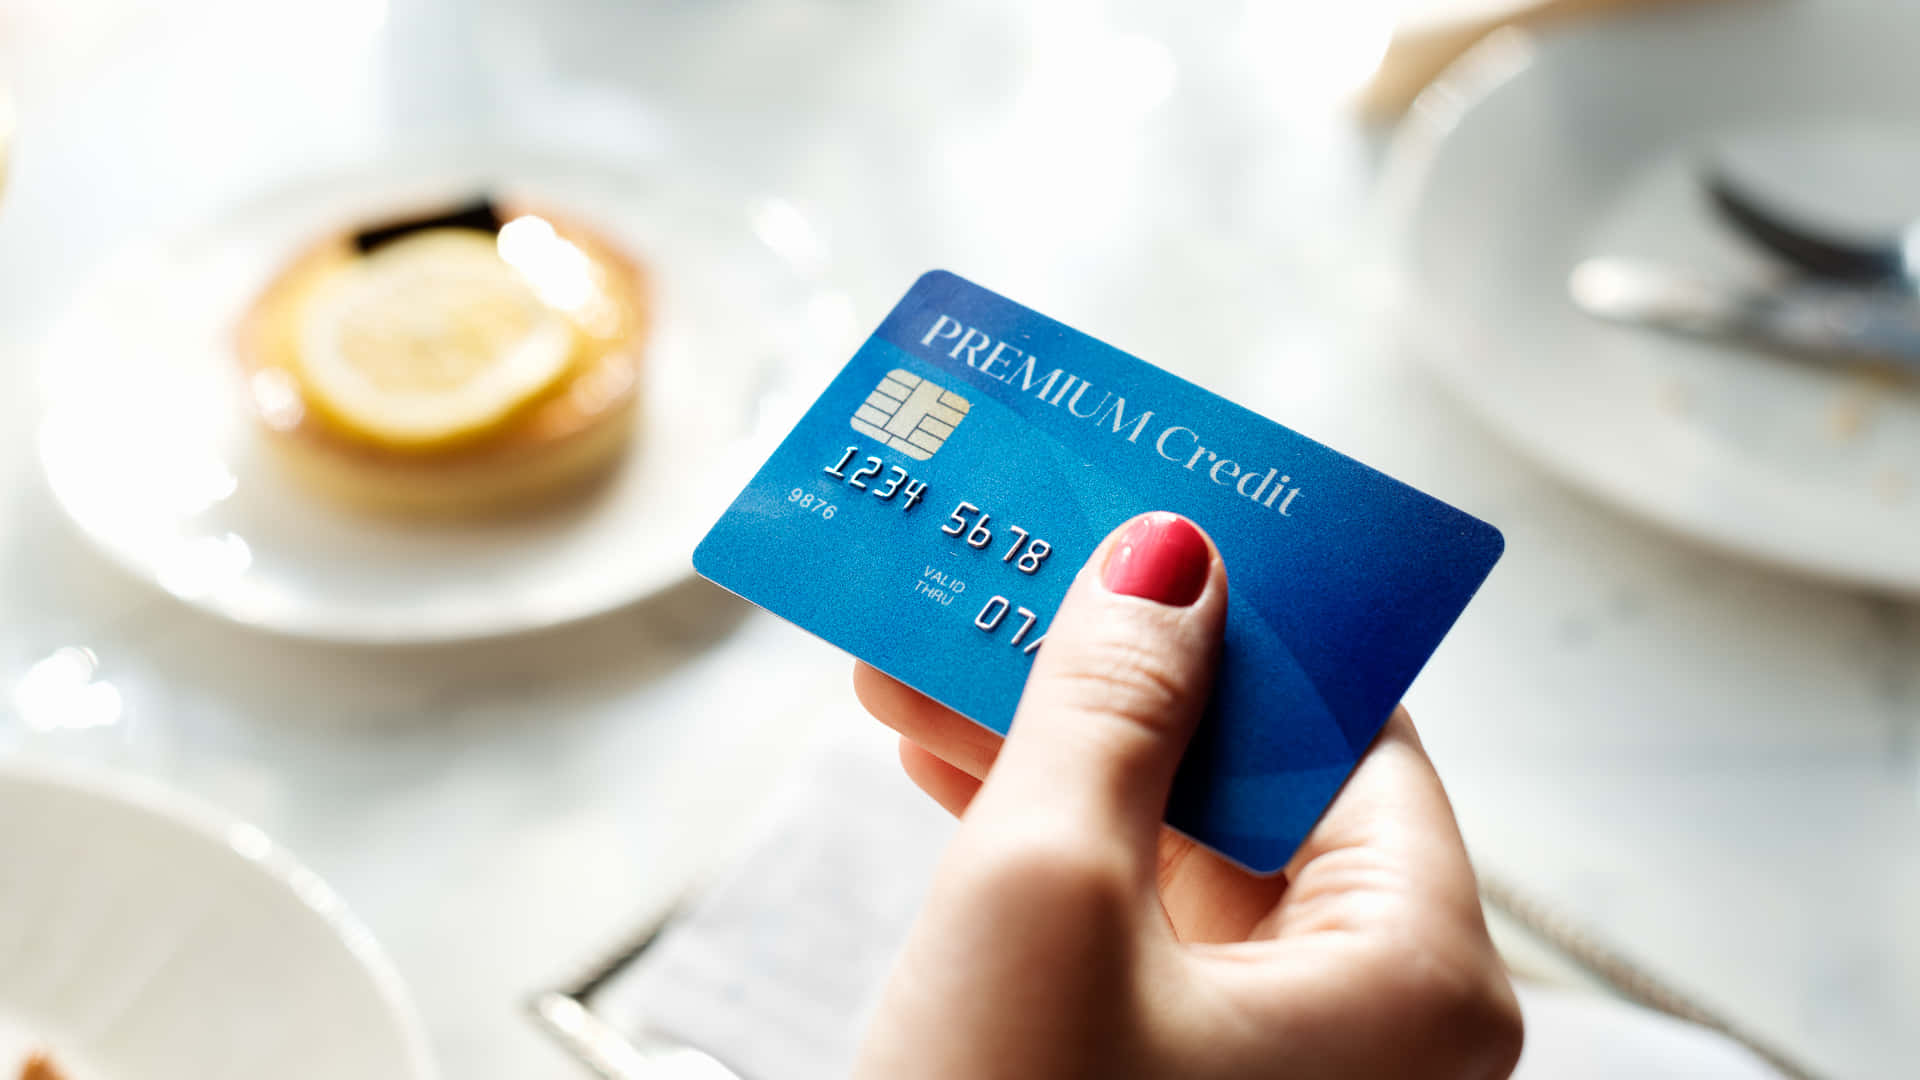 Enkvinna Som Håller I Ett Kreditkort Framför Ett Bord